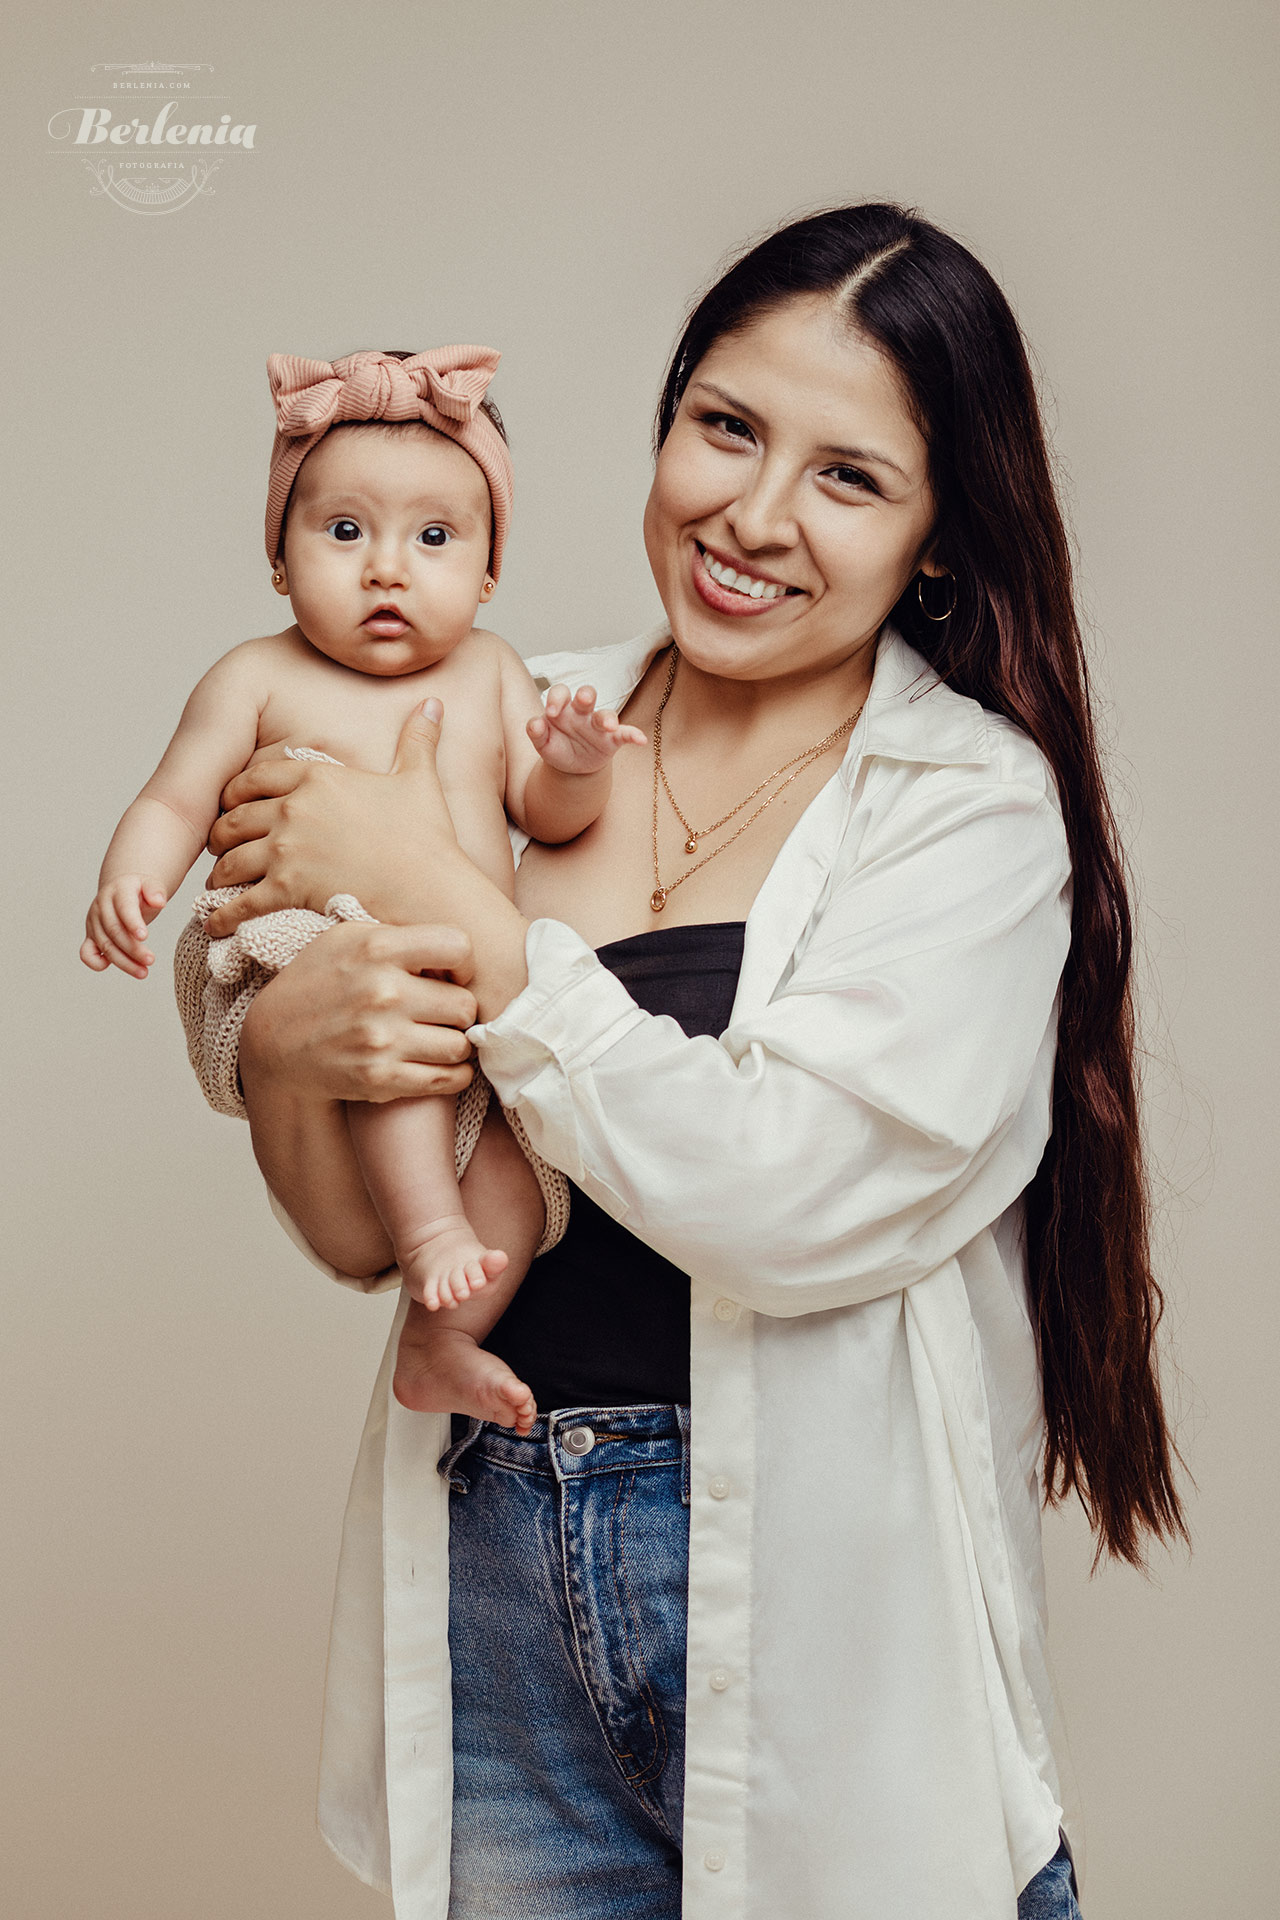 Fotografía de bebé de 3 meses - Sesión de fotos en estudio - Villa Urquiza, CABA, Buenos Aires, Argentina - Berlenia Fotografía - 14